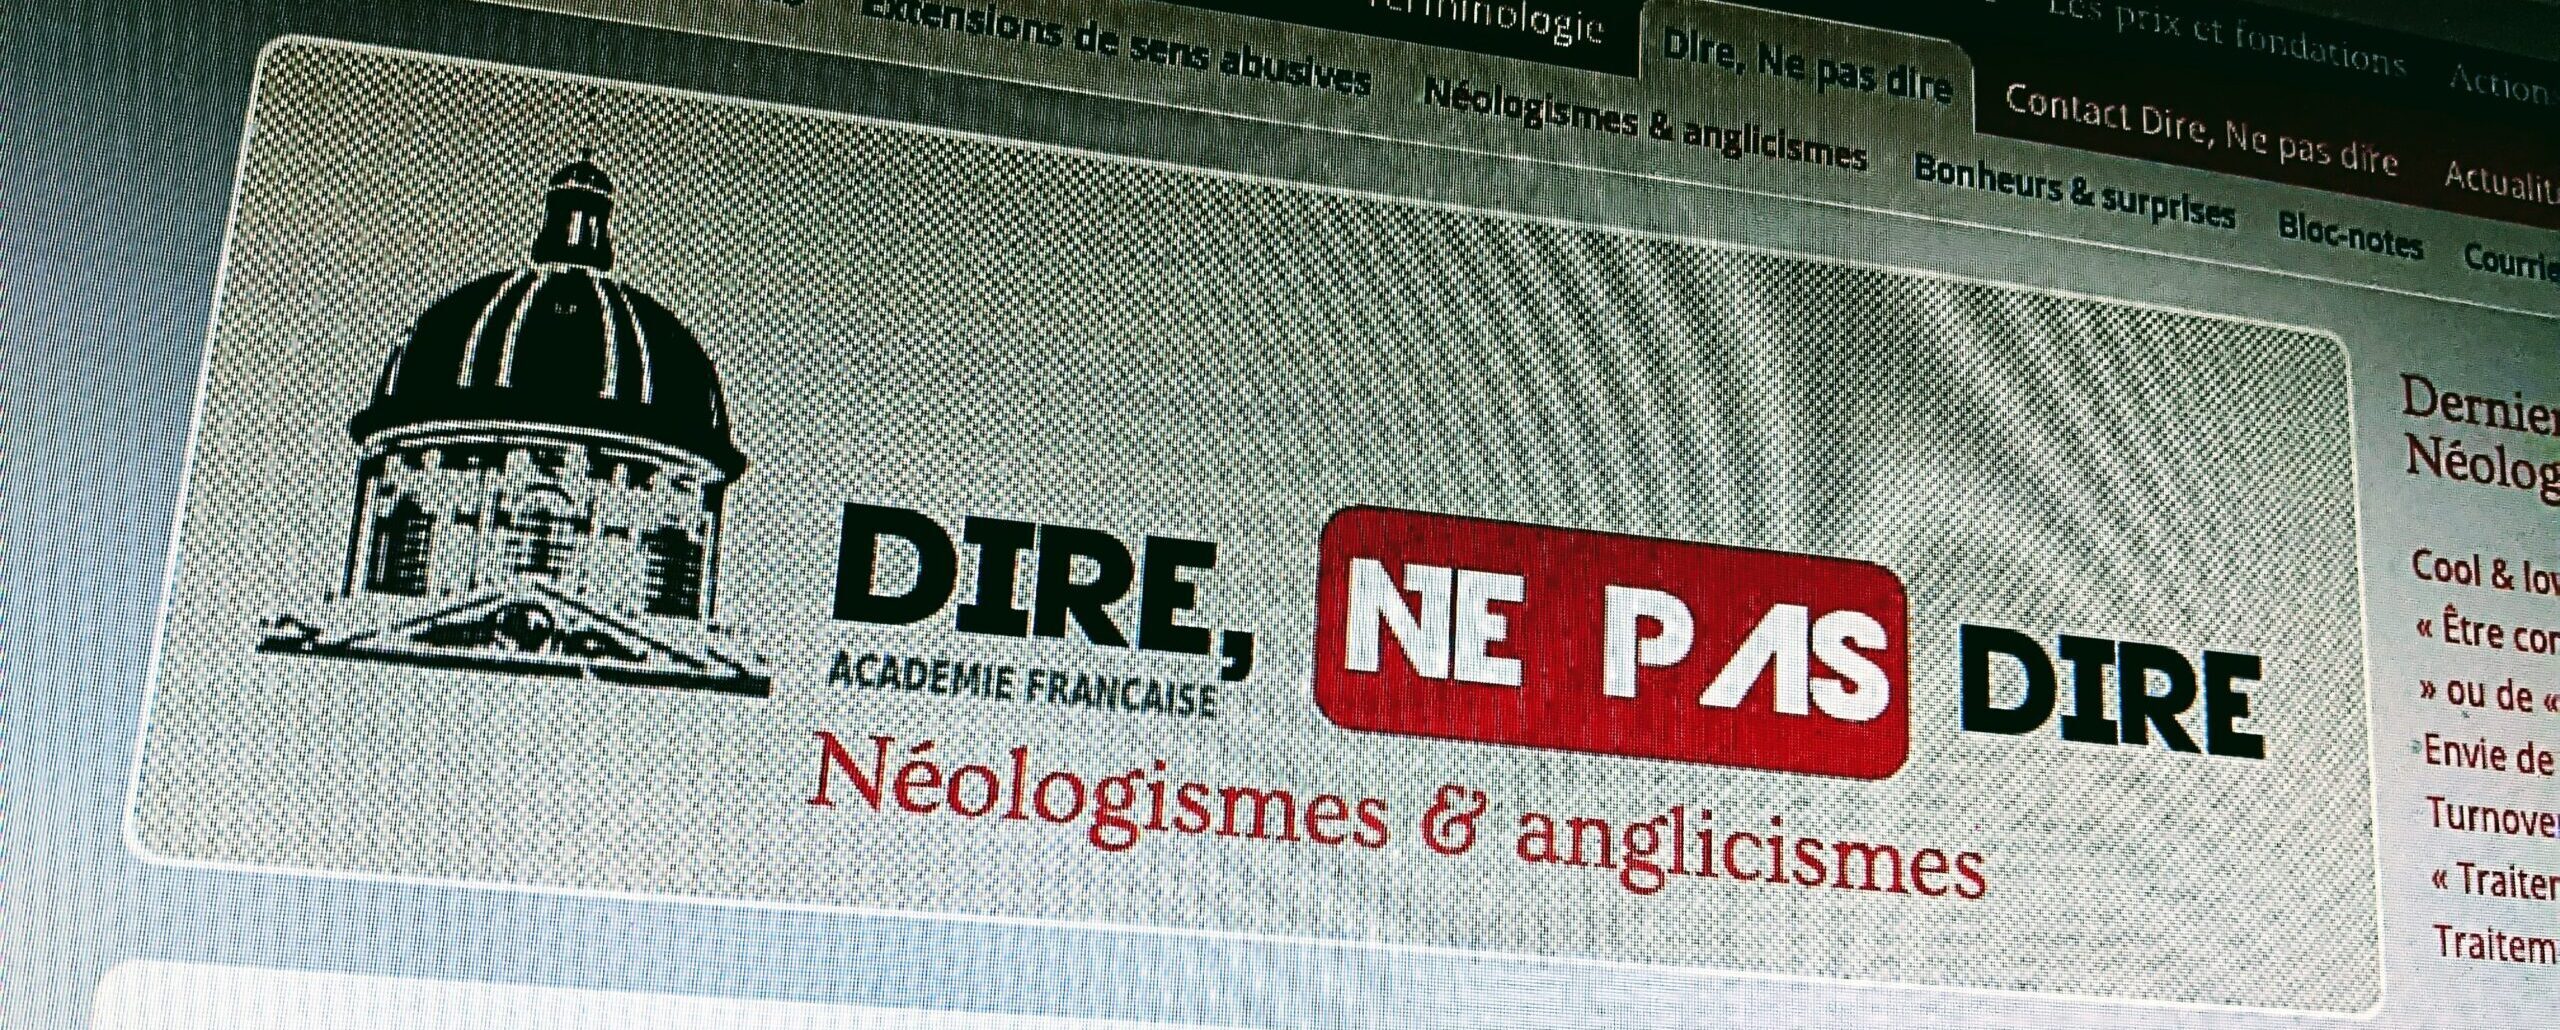 Photo du site web de l'Académie française.